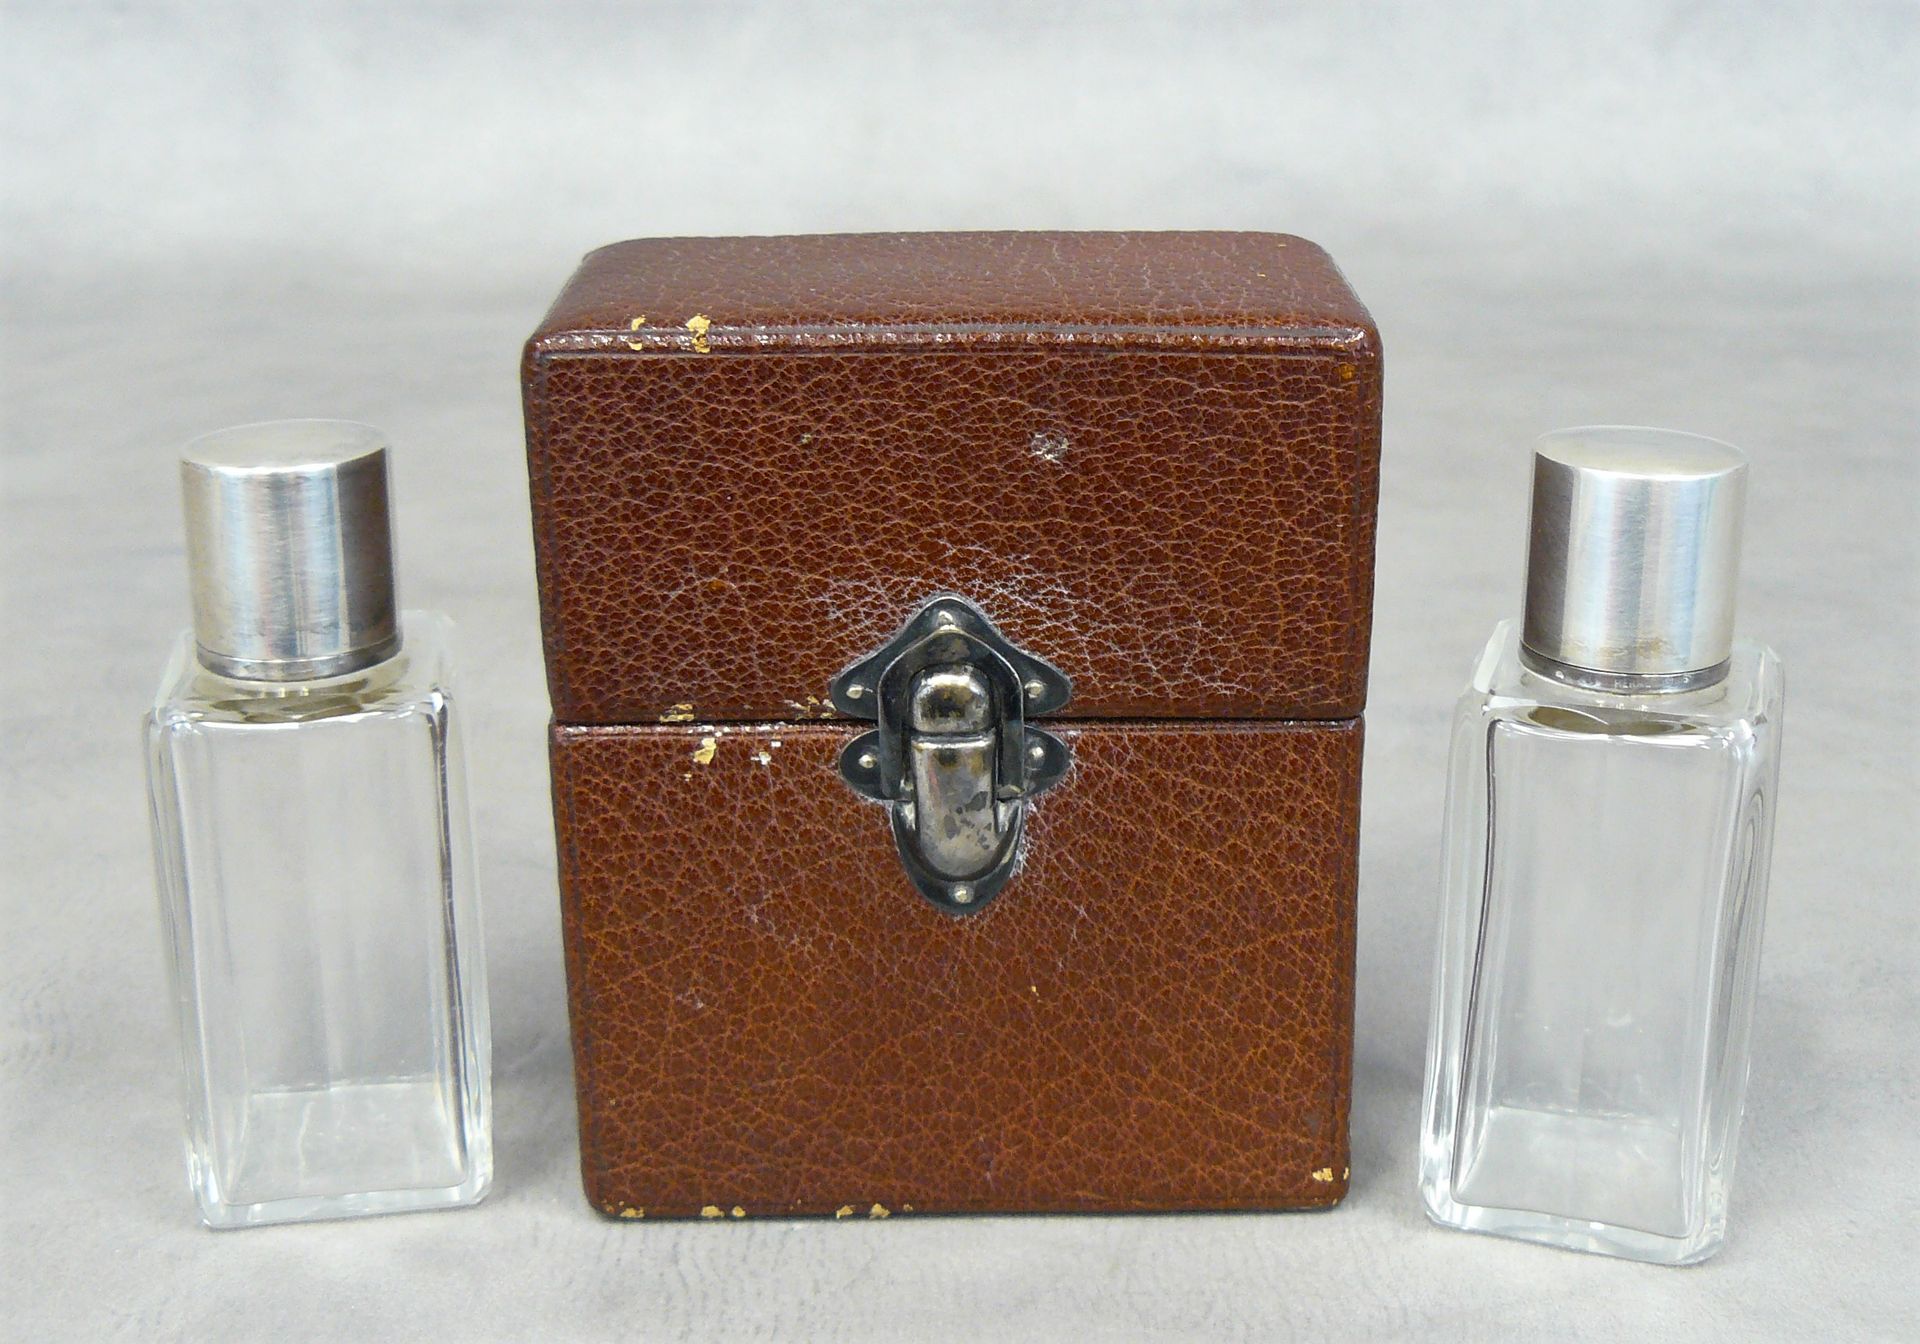 HERMES 
巴黎爱马仕：一个有签名的皮箱，里面有两个玻璃香水瓶，银质框架上有签名 - 11 x 9,5 x 5,5 cm